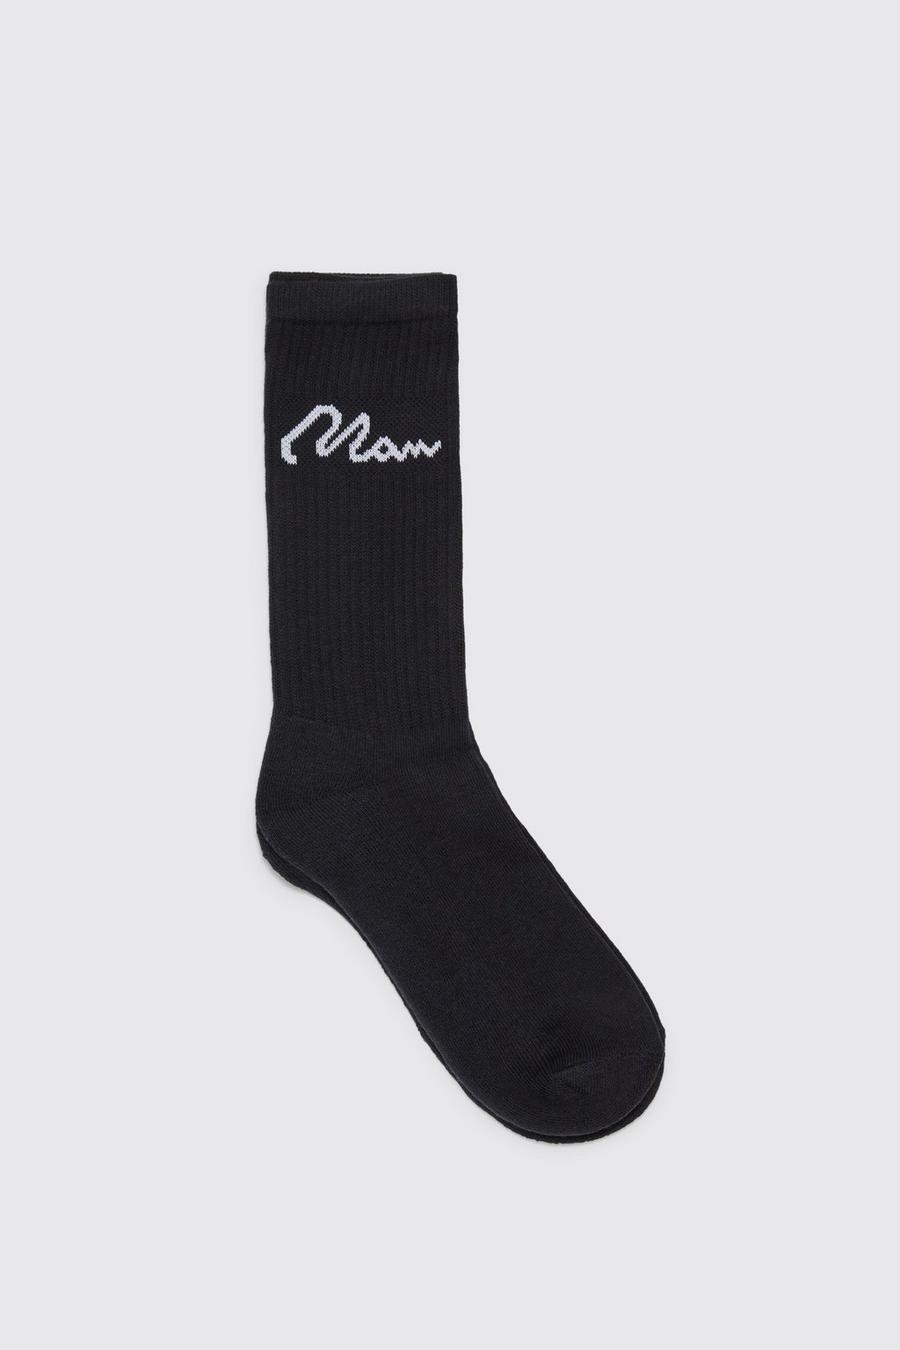 Pack de 7 pares de calcetines deportivos con firma MAN, Black